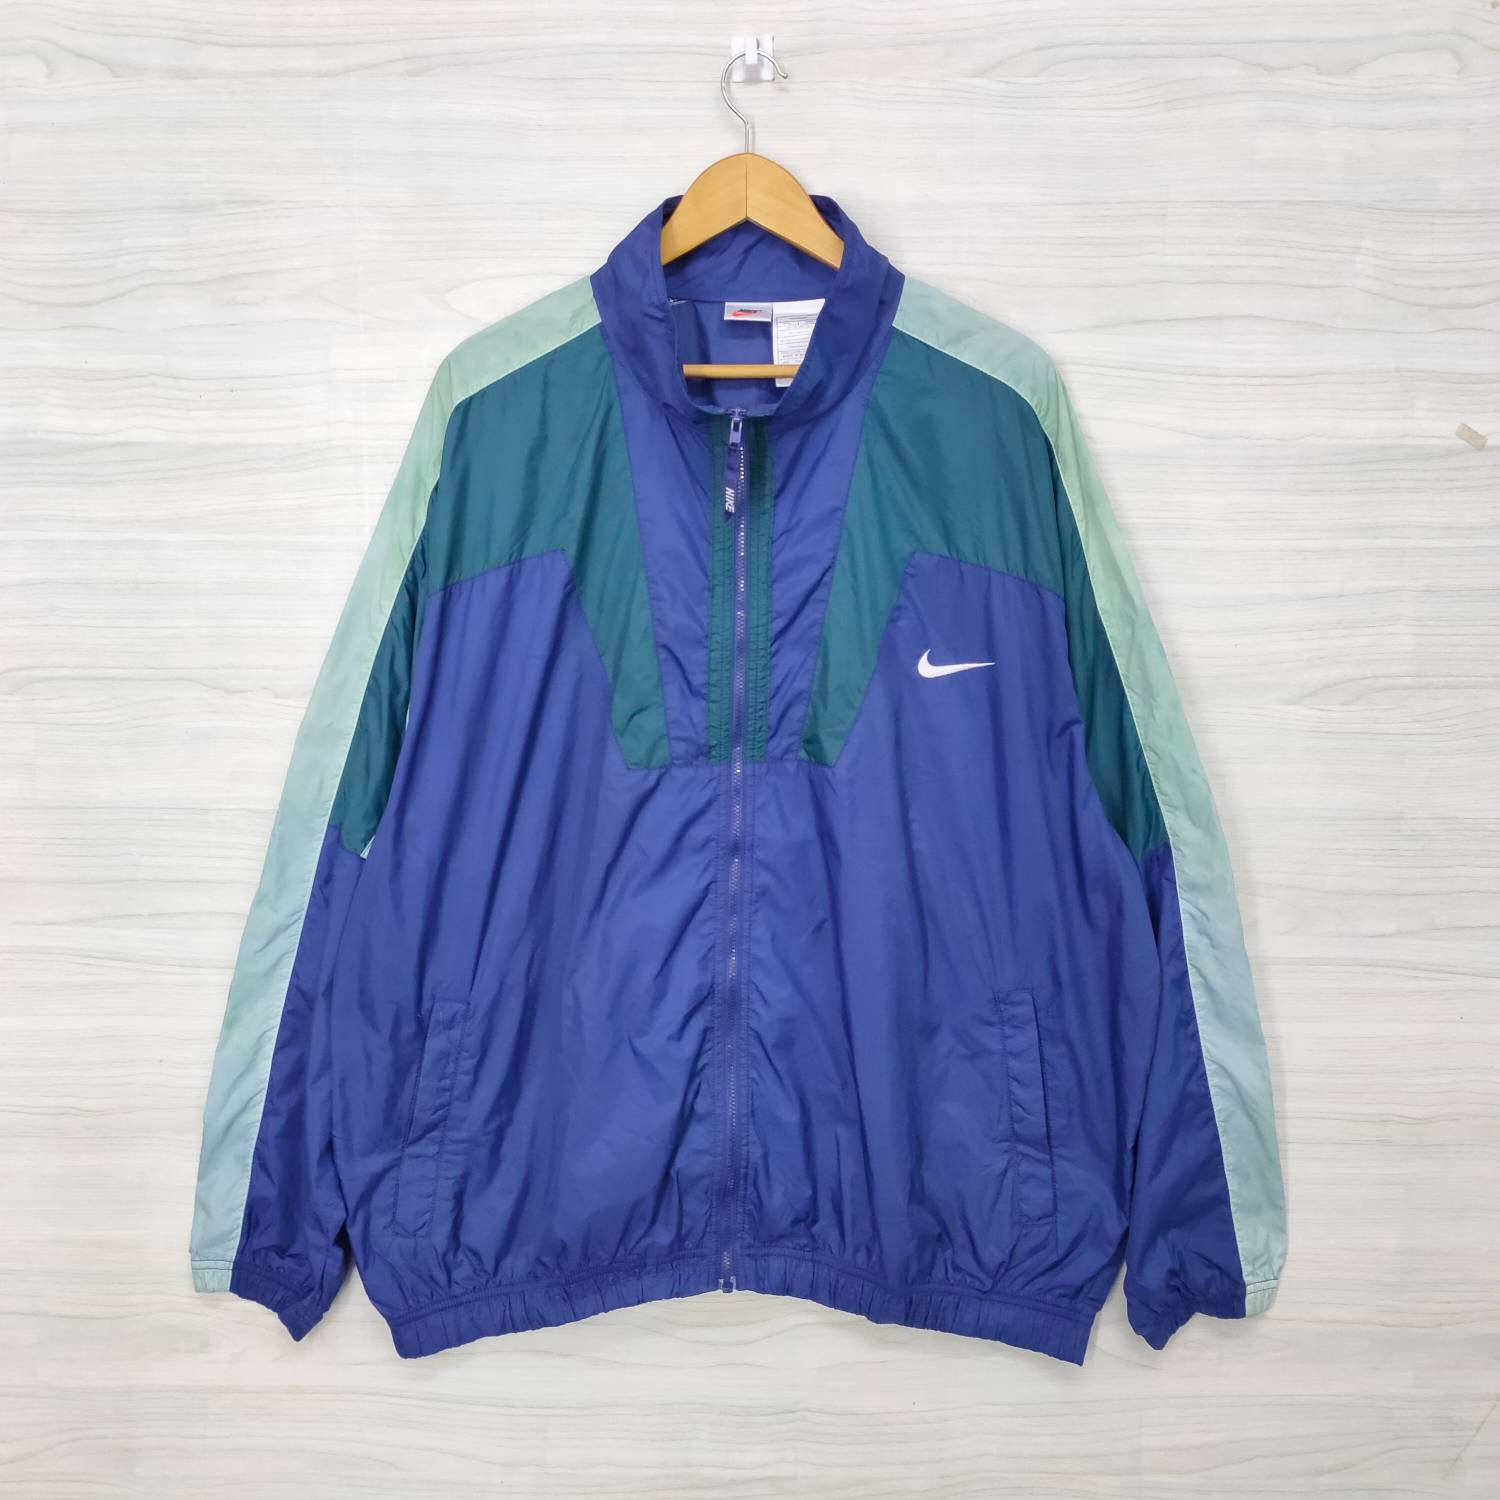 NIKE Windbreaker Jacket Vintage 90s Nike Jacket Sportwear | Etsy